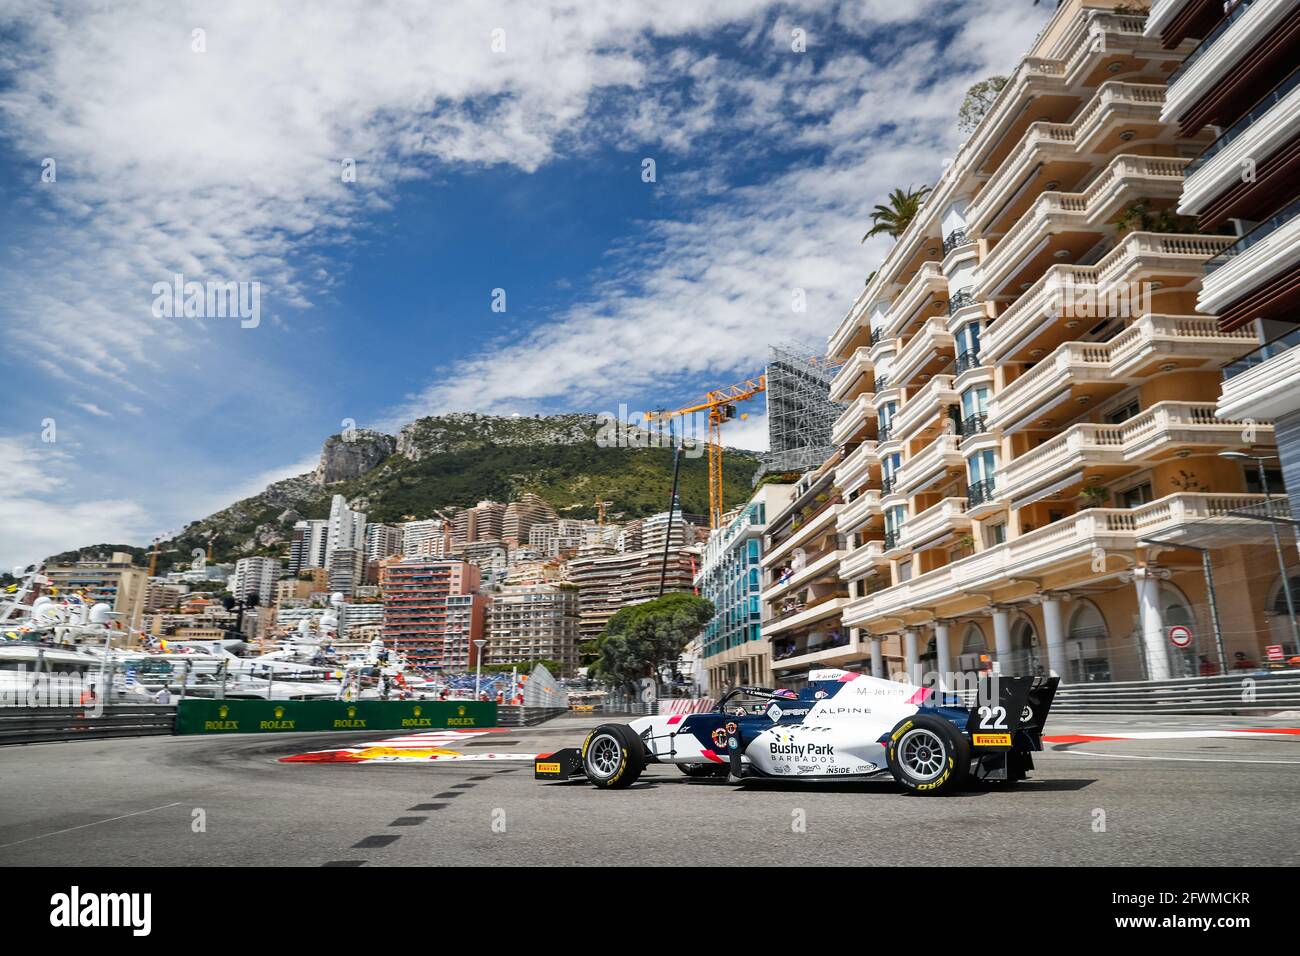 22 MALONEY Zane, GP di R-ace, azione durante il 3° round del Campionato europeo Regionale Formula 2021 di Alpine a Monaco, dal 21 al 23 maggio 2021 - Foto Antonin Vincent / DPPI / LiveMedia Foto Stock